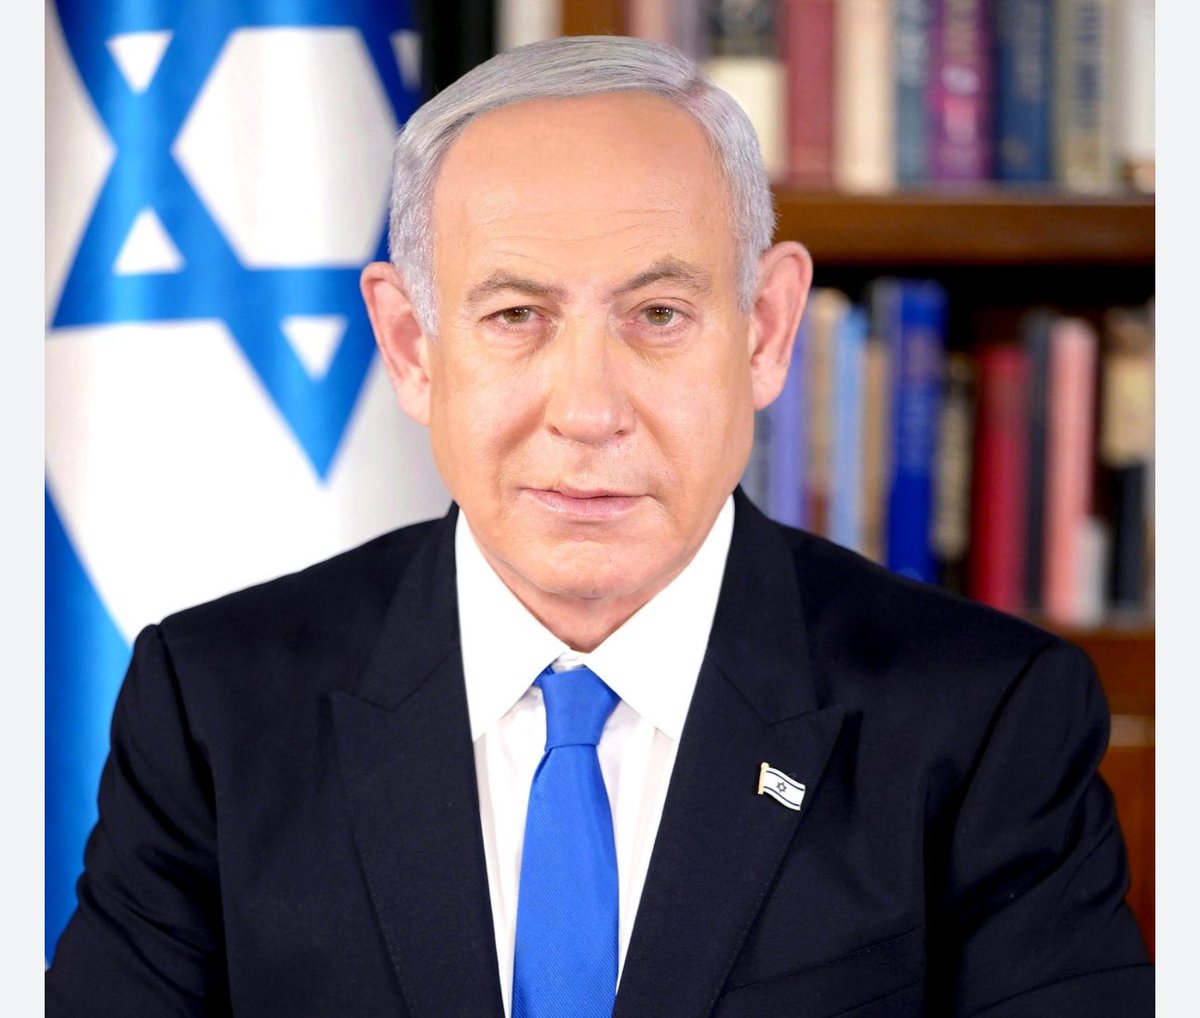 O primeiro-ministro Netanyahu responde à hipocrisia internacional: 

“Nenhuma decisão, nem em Haia nem 
em qualquer outro lugar, enfraquecerá de forma alguma a nossa determinação de alcançar todos os objectivos de guerra”.